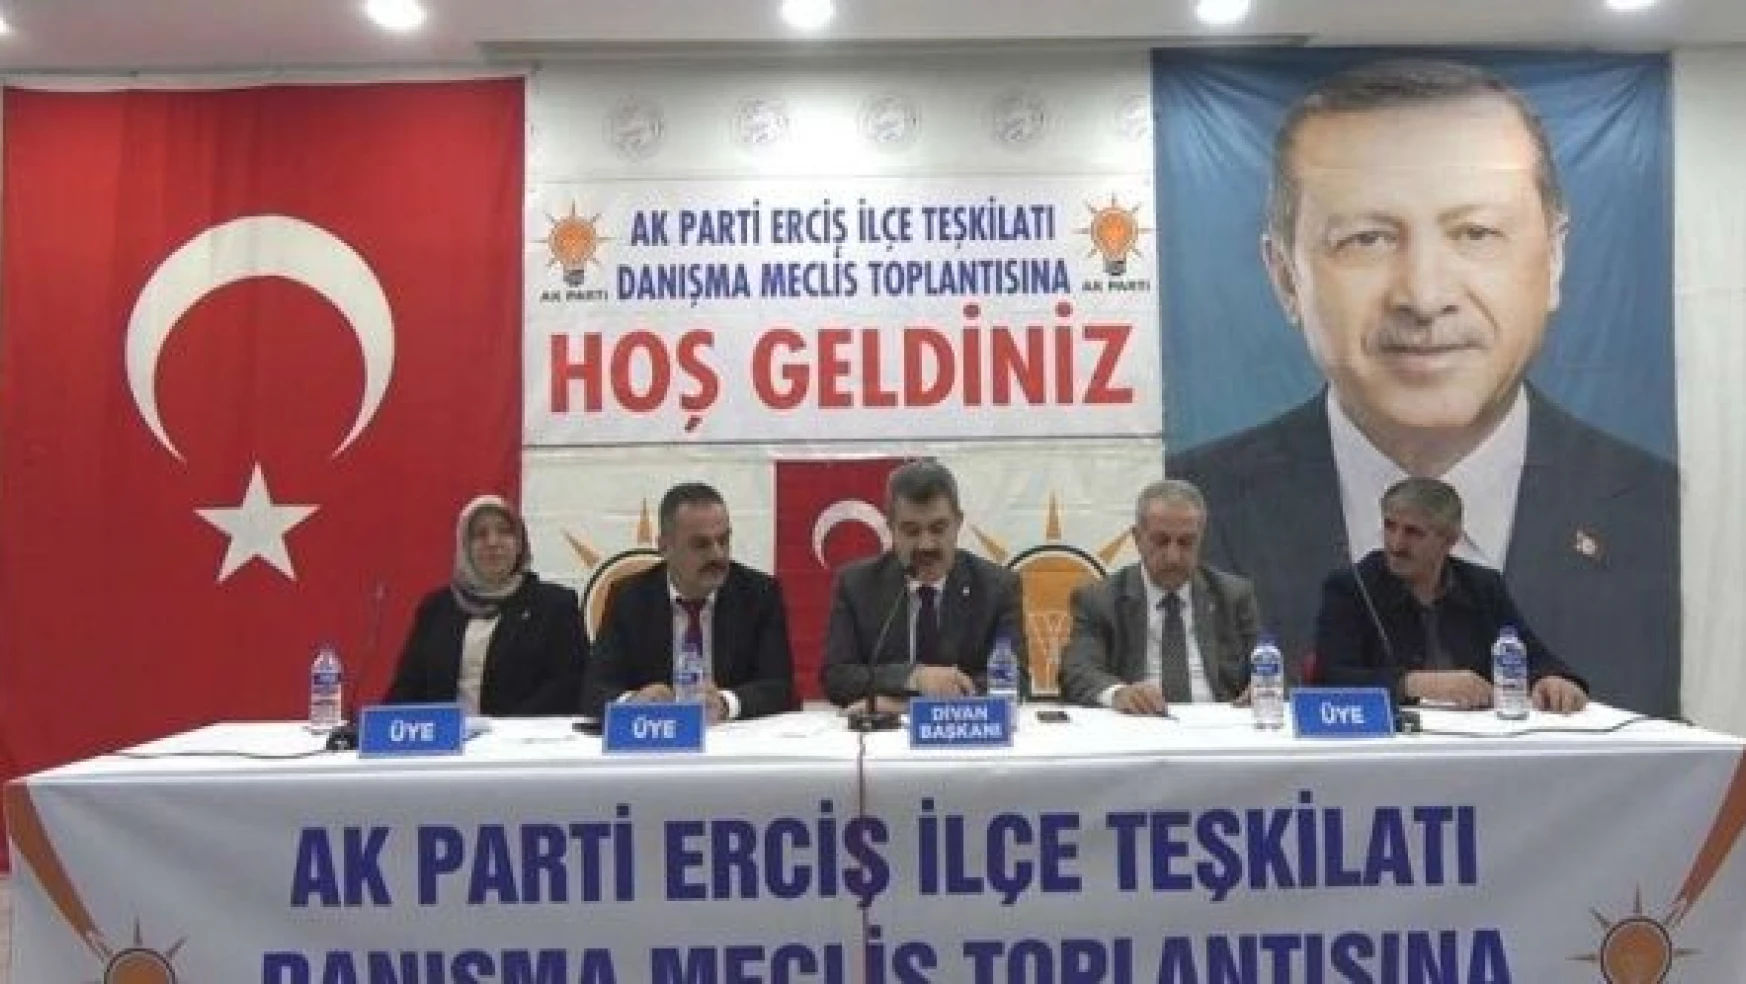 Erciş'te AK Parti'nin Danışma Meclis Toplantısı yapıldı